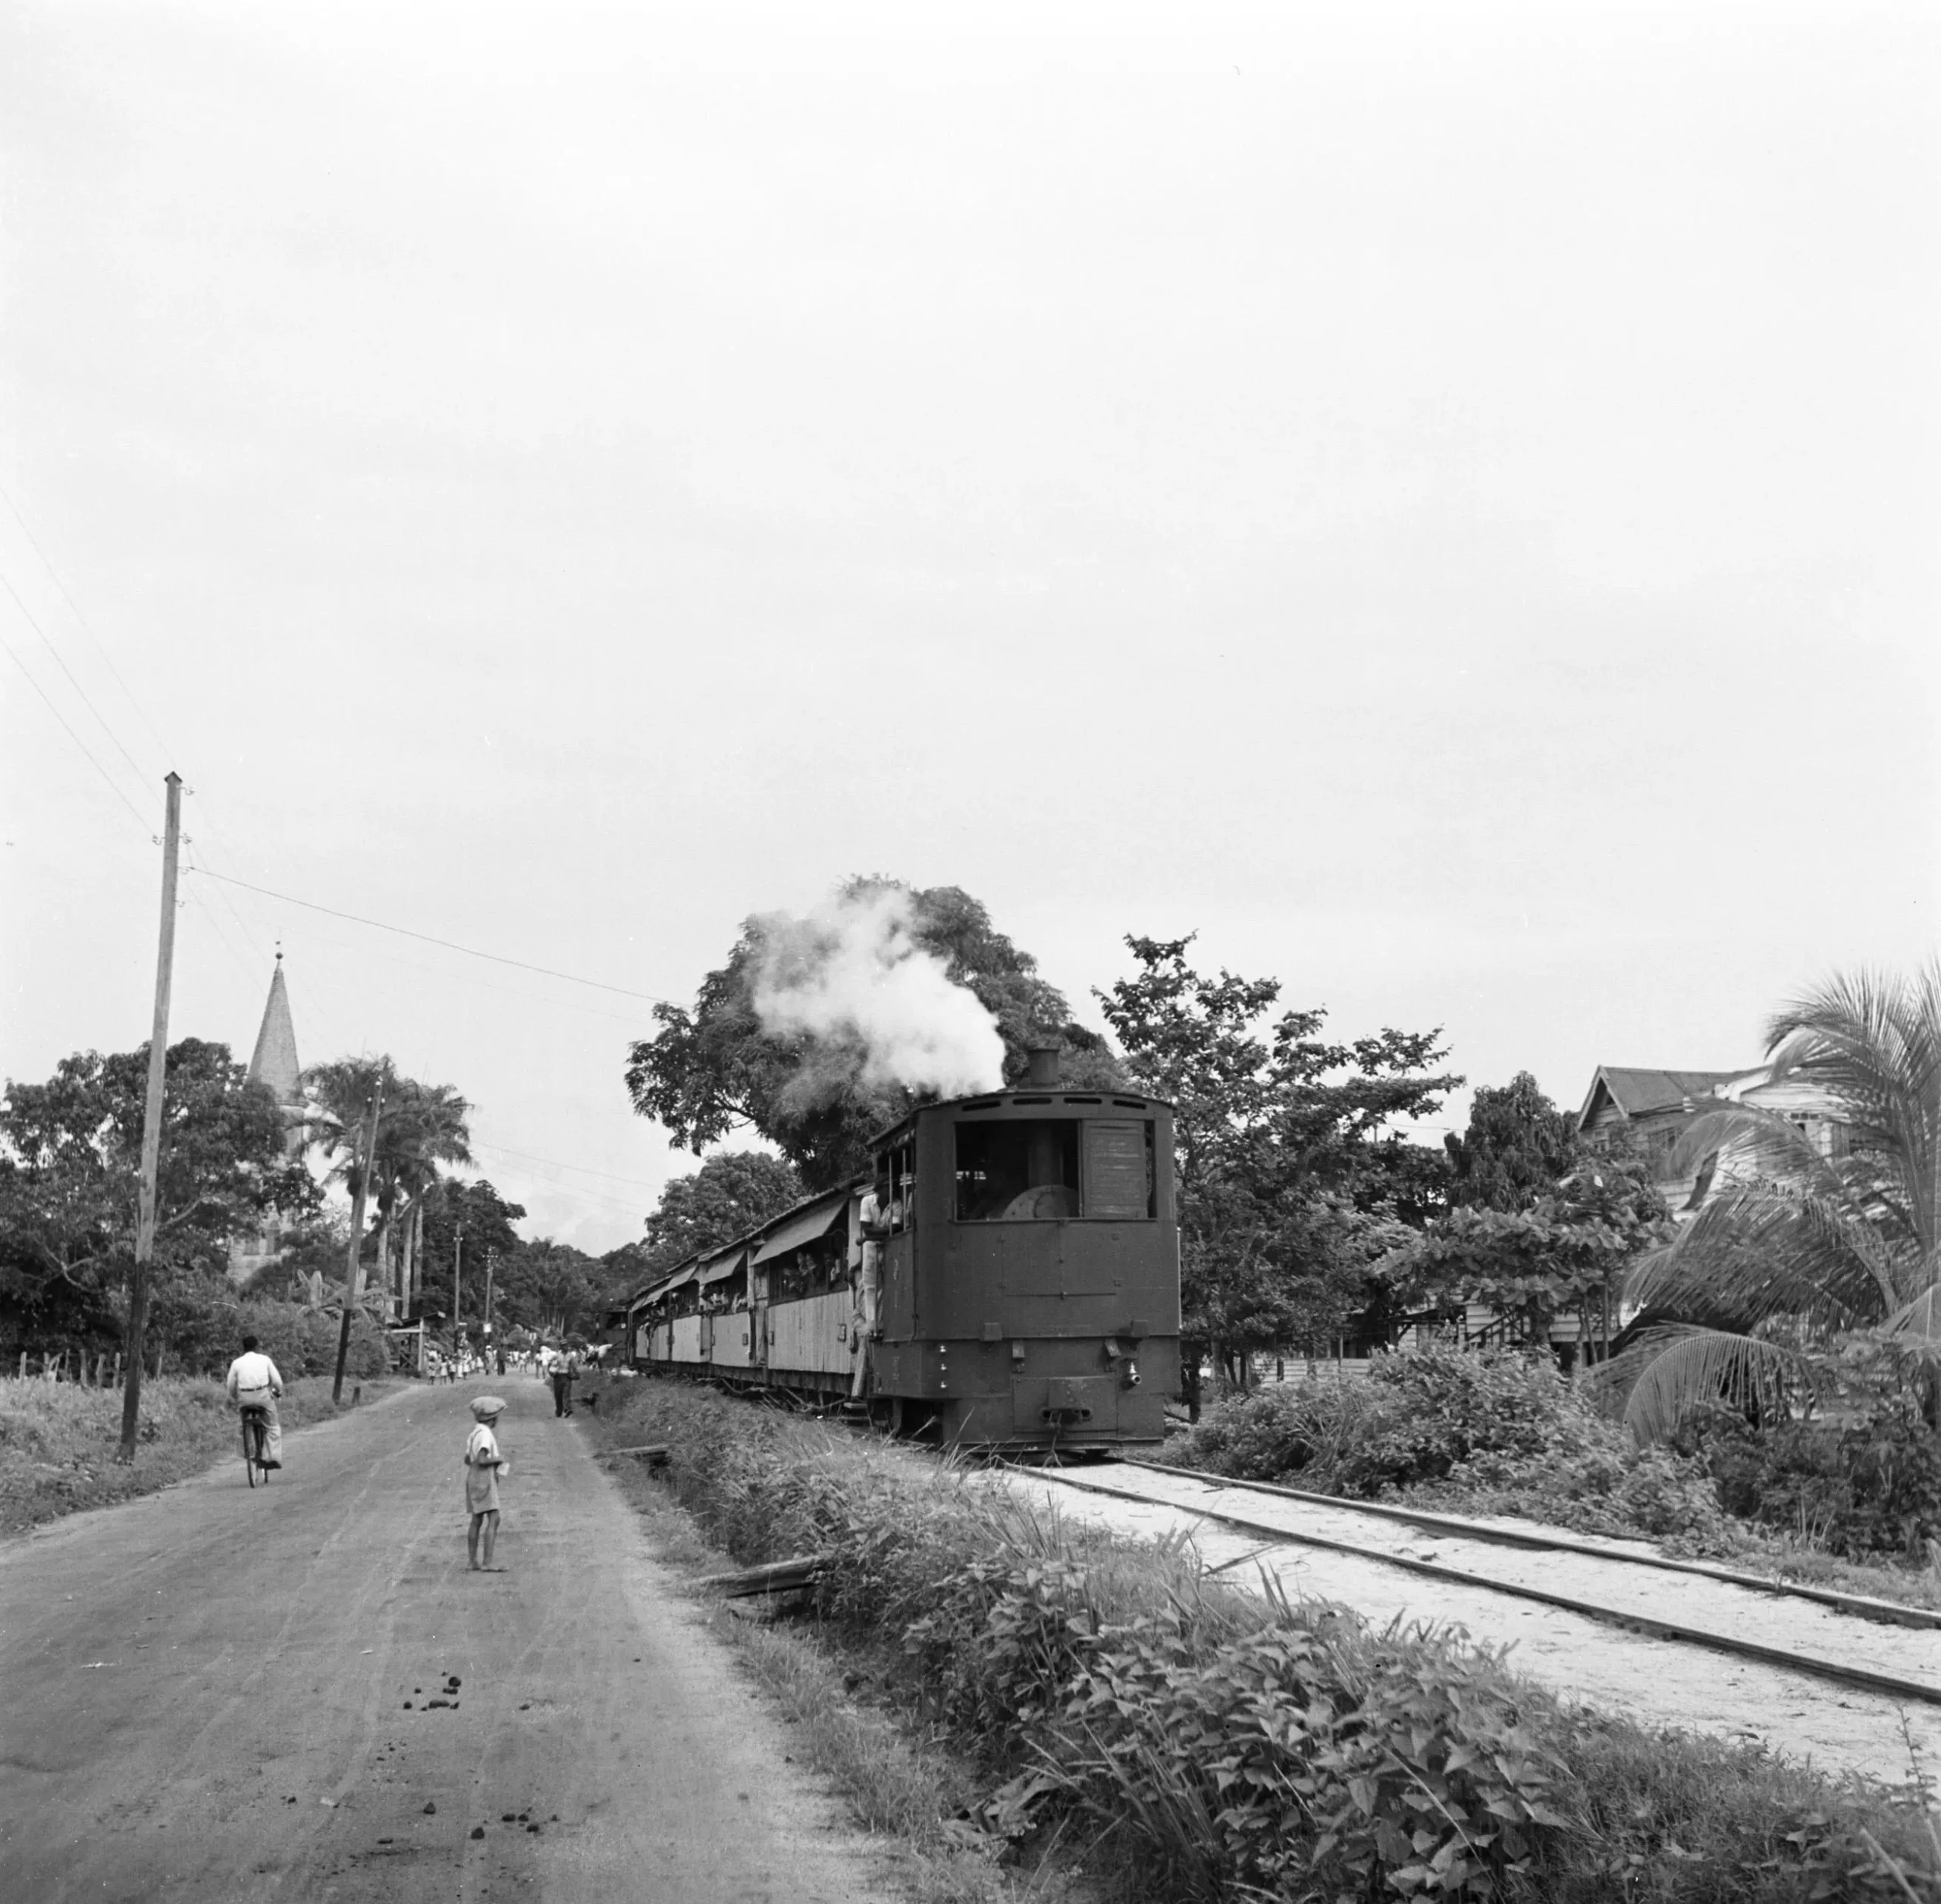 transporte ferroviario en surinam - Cuál es el idioma que se habla en Surinam